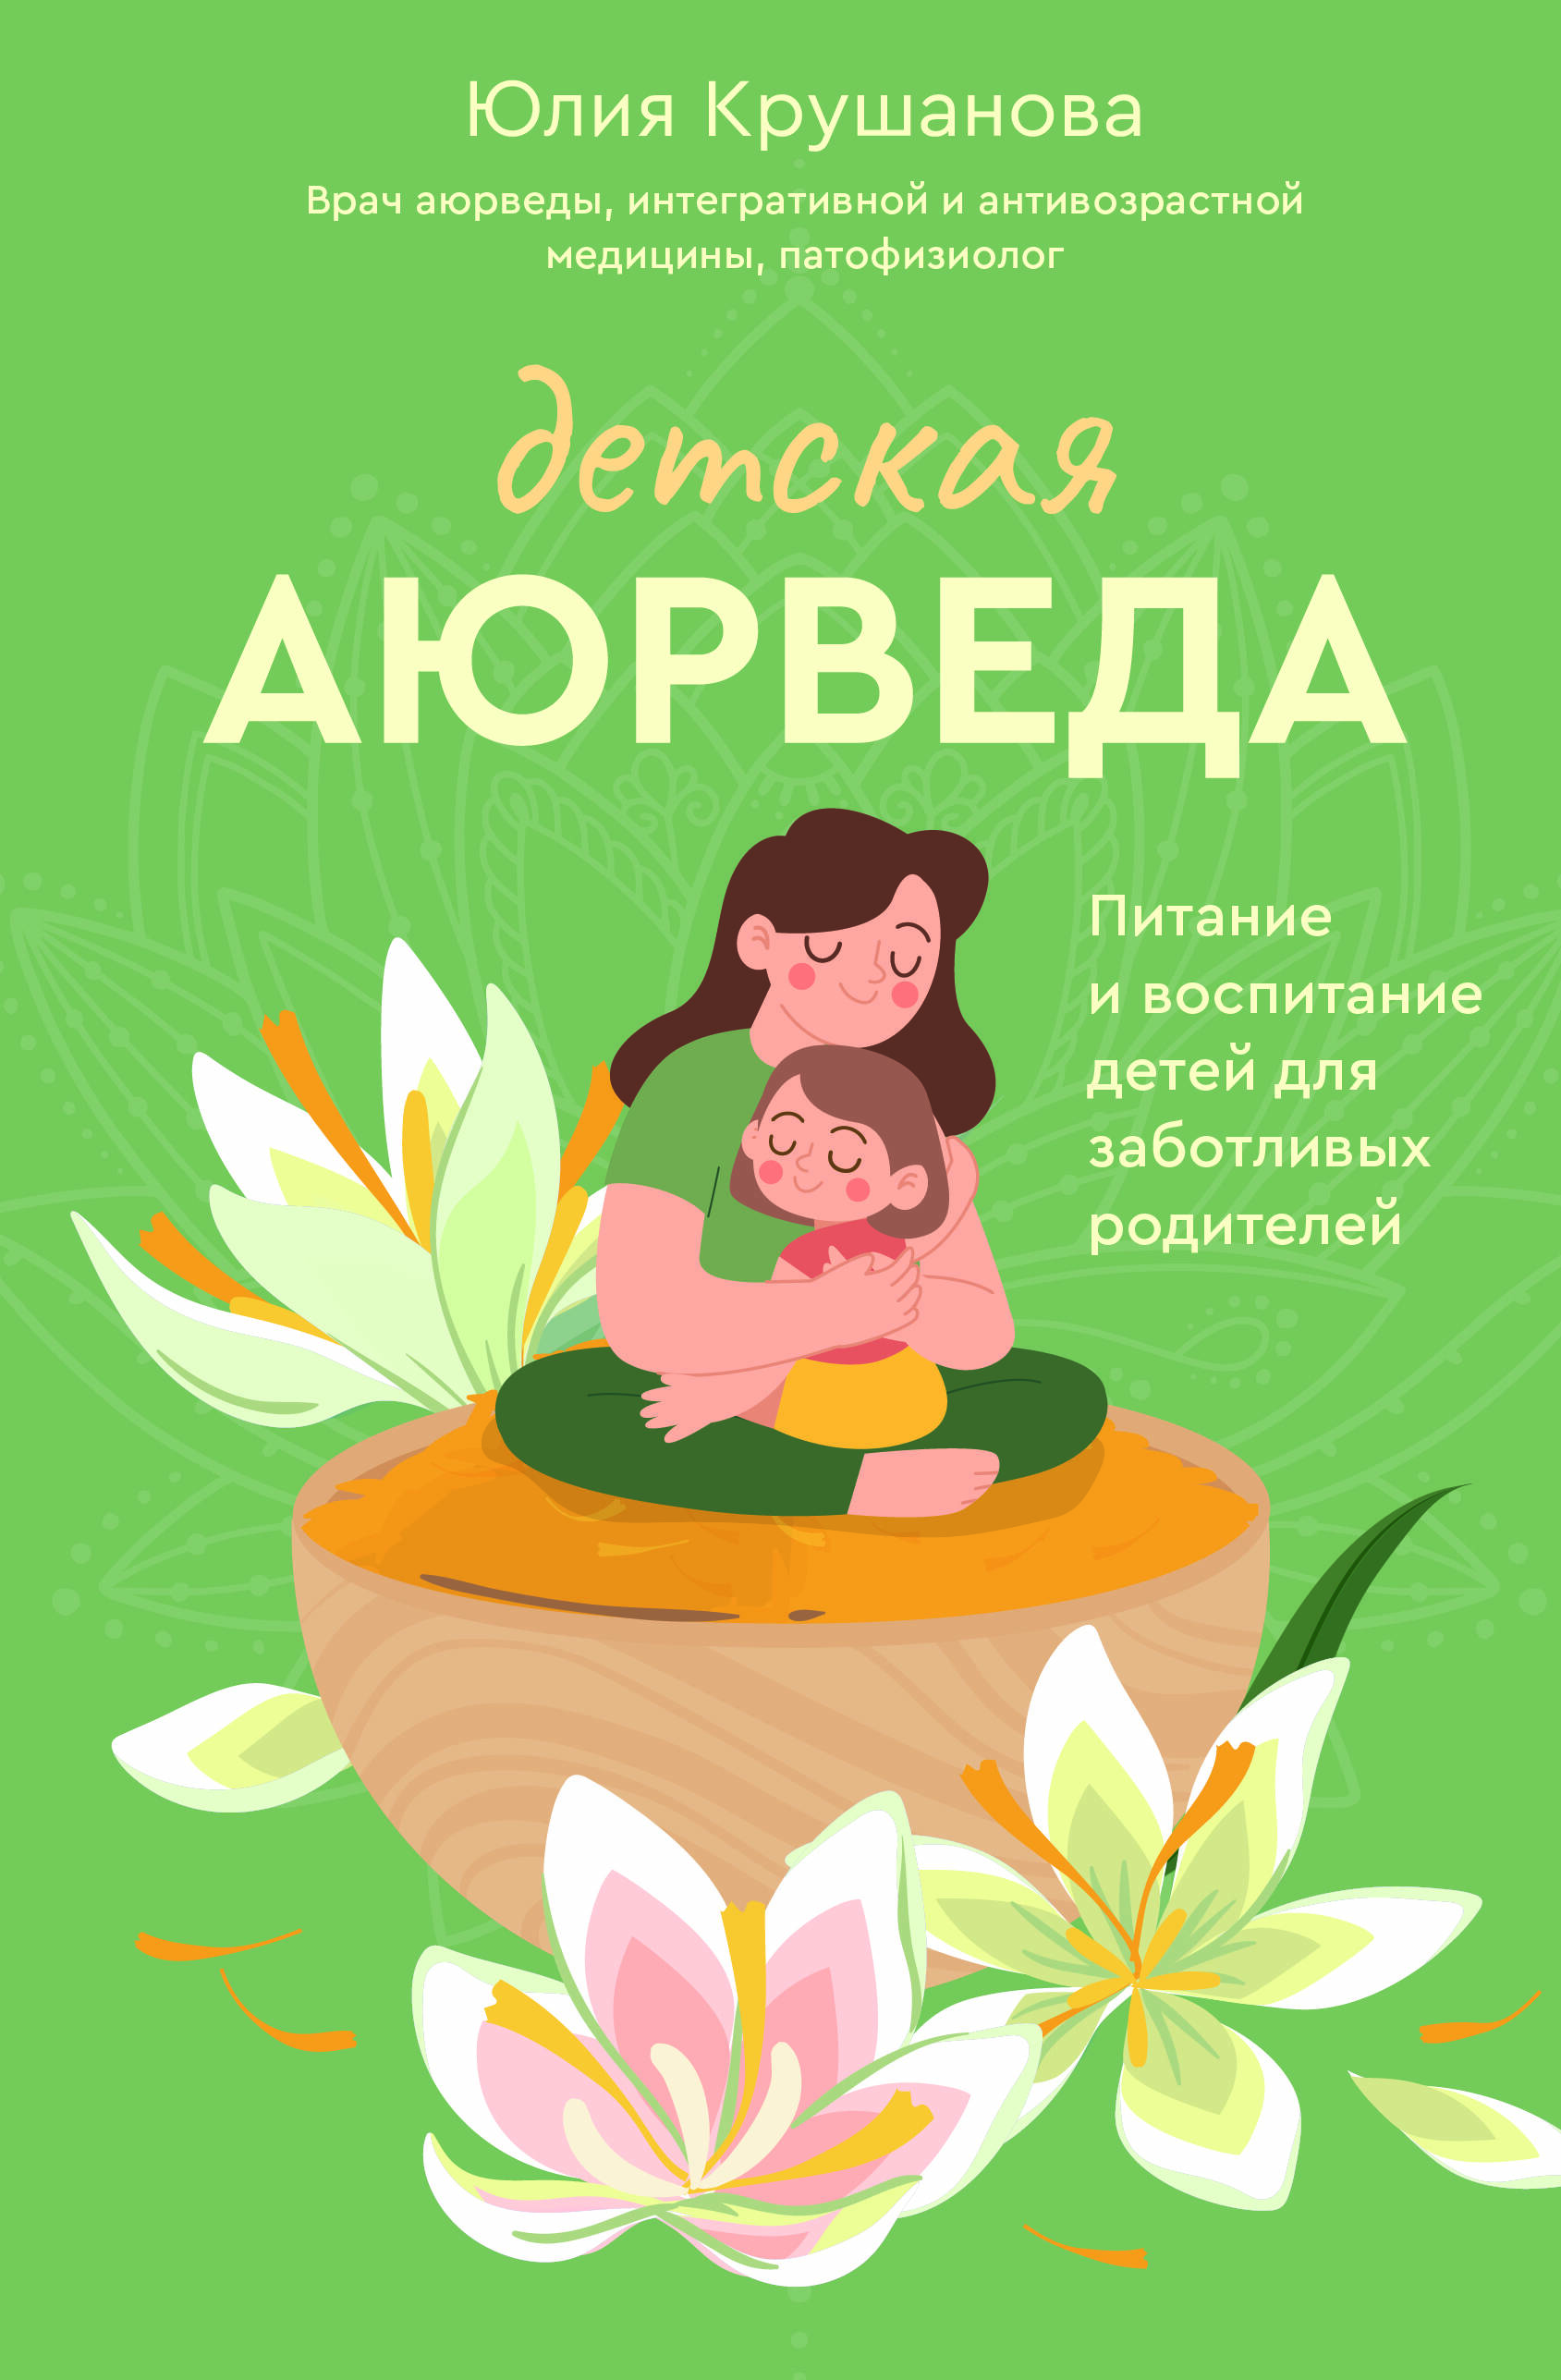 Крушанова Юлия - Детская аюрведа. Питание и воспитание детей для заботливых родителей